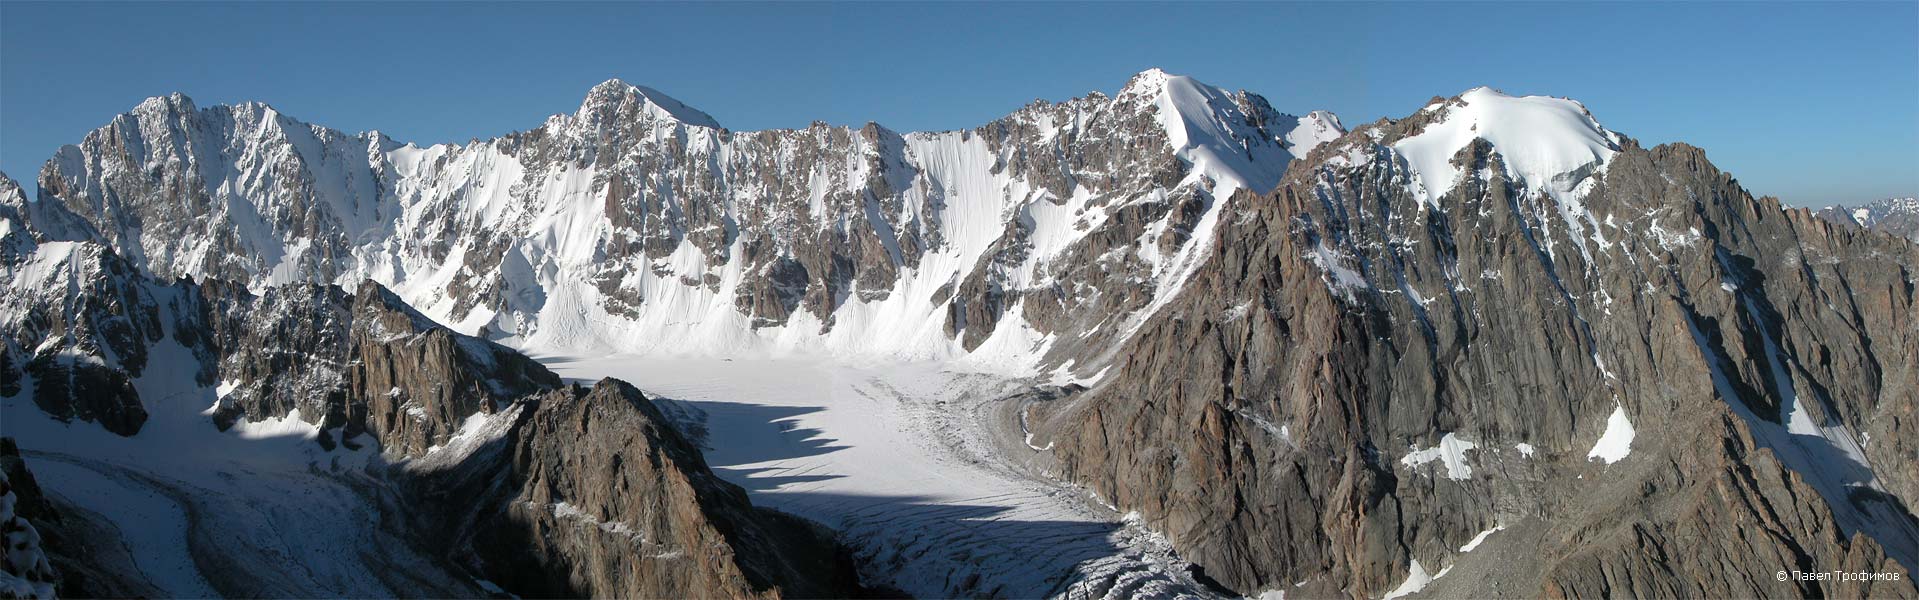 Вершины слева-направо: пик Свободной Кореи, Ак-Тоо, Теке-Тор, Бокс. Ущелье Ала-Арча, Киргизский хребет. Северный Тянь-Шань. Фото Павел Трофимов